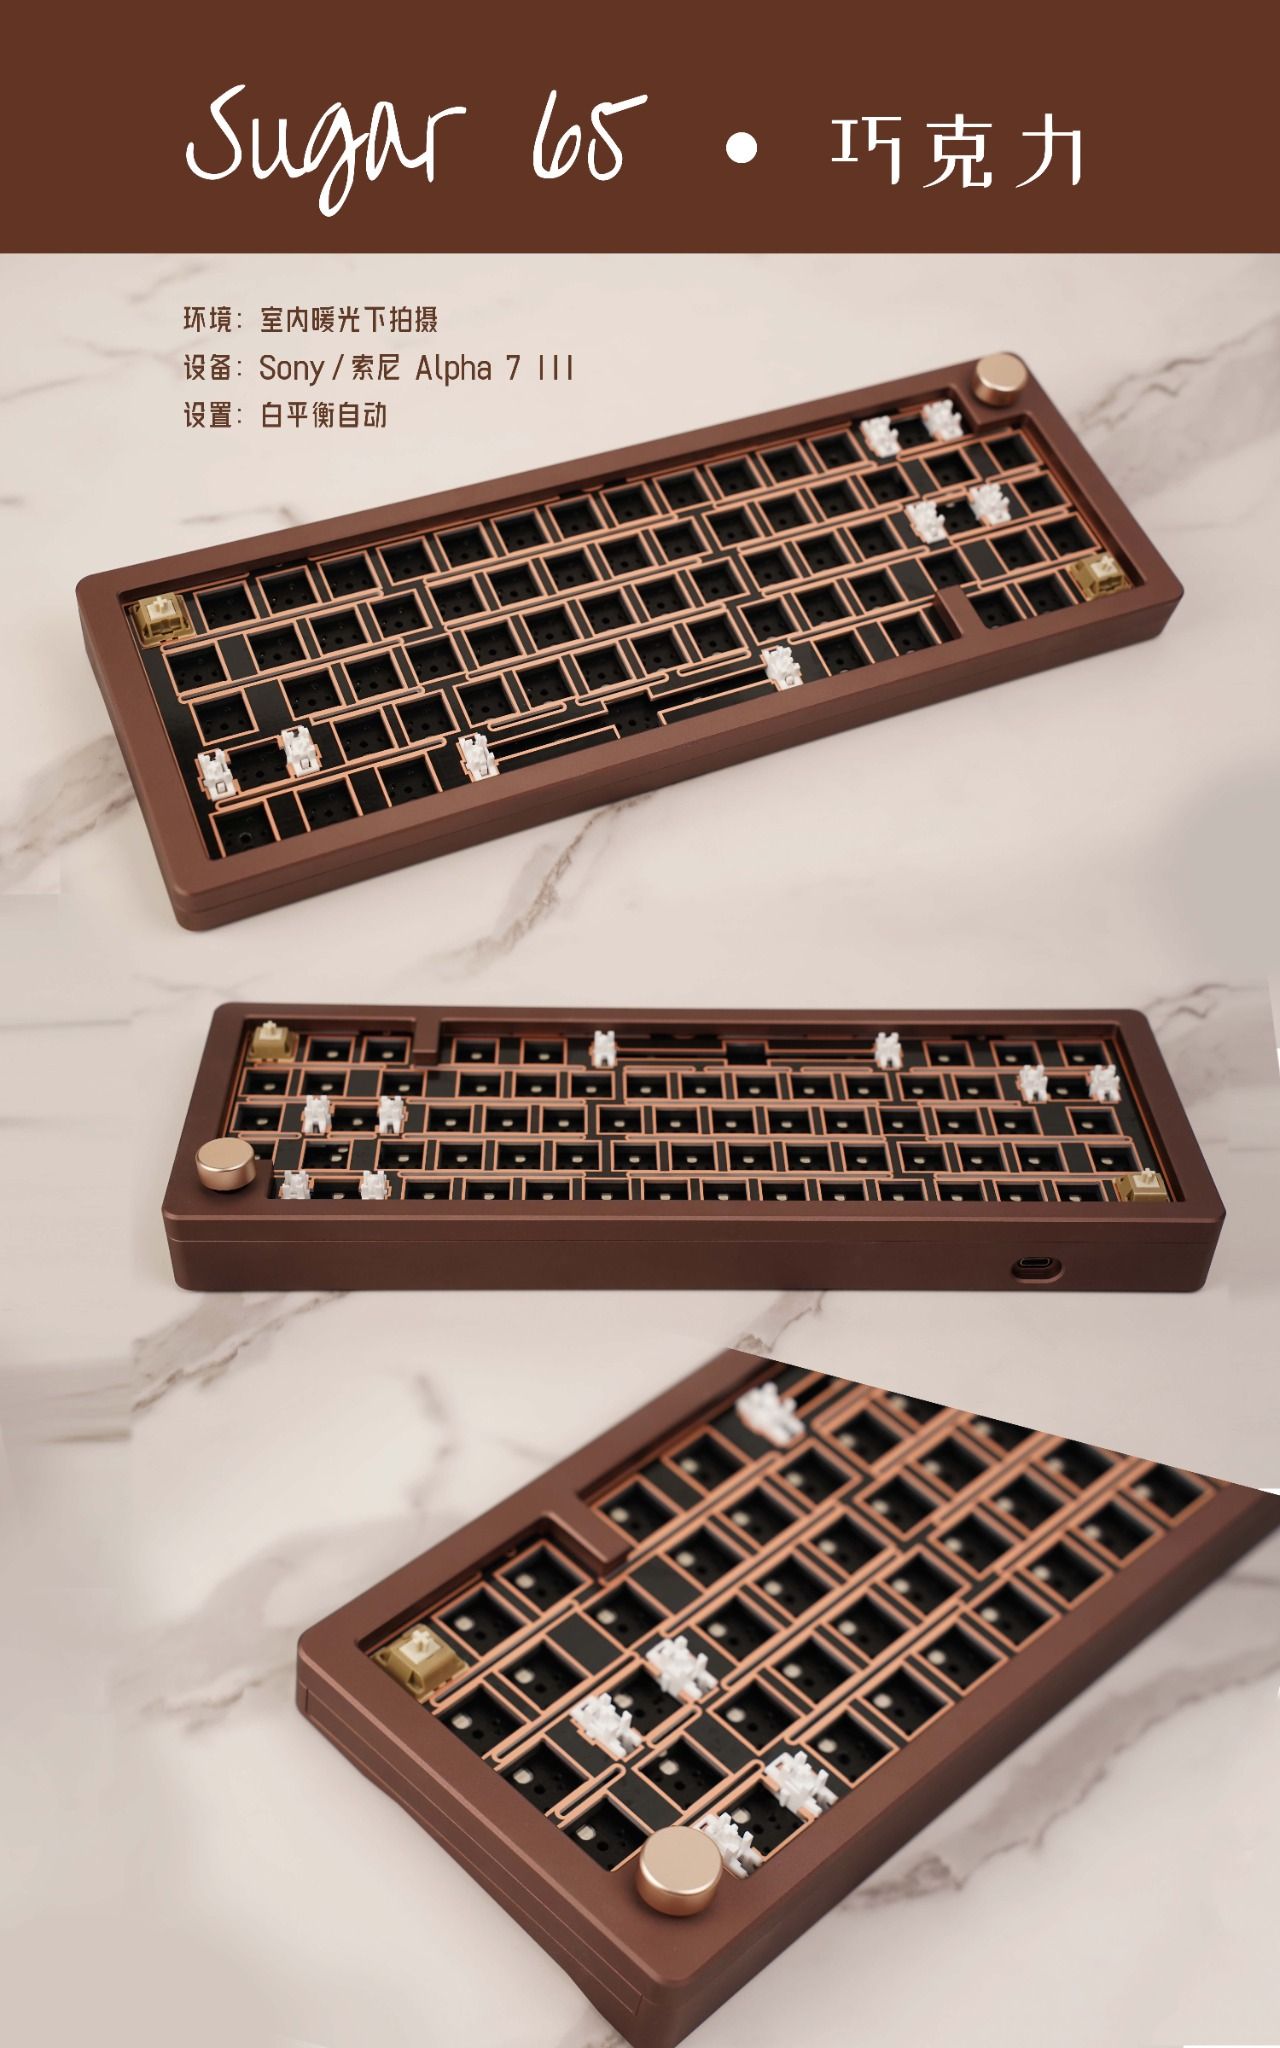  [instock] Sugar65 R2 Keyboard 